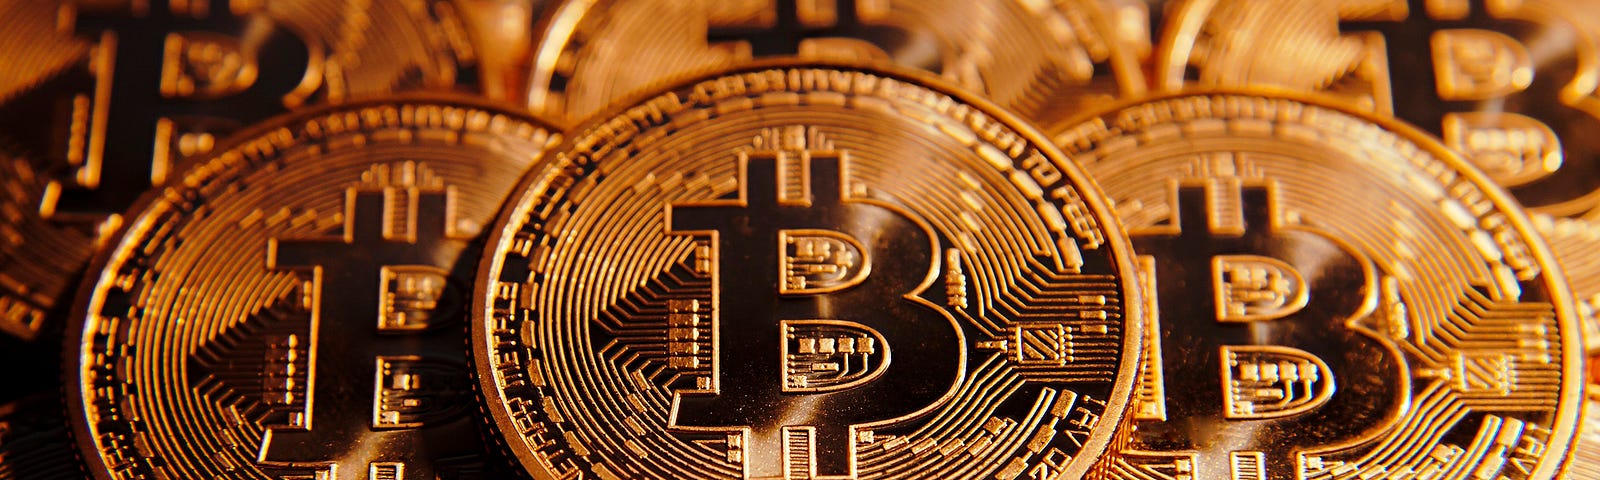 stabile bitcoin bitcoin rmb prezzo